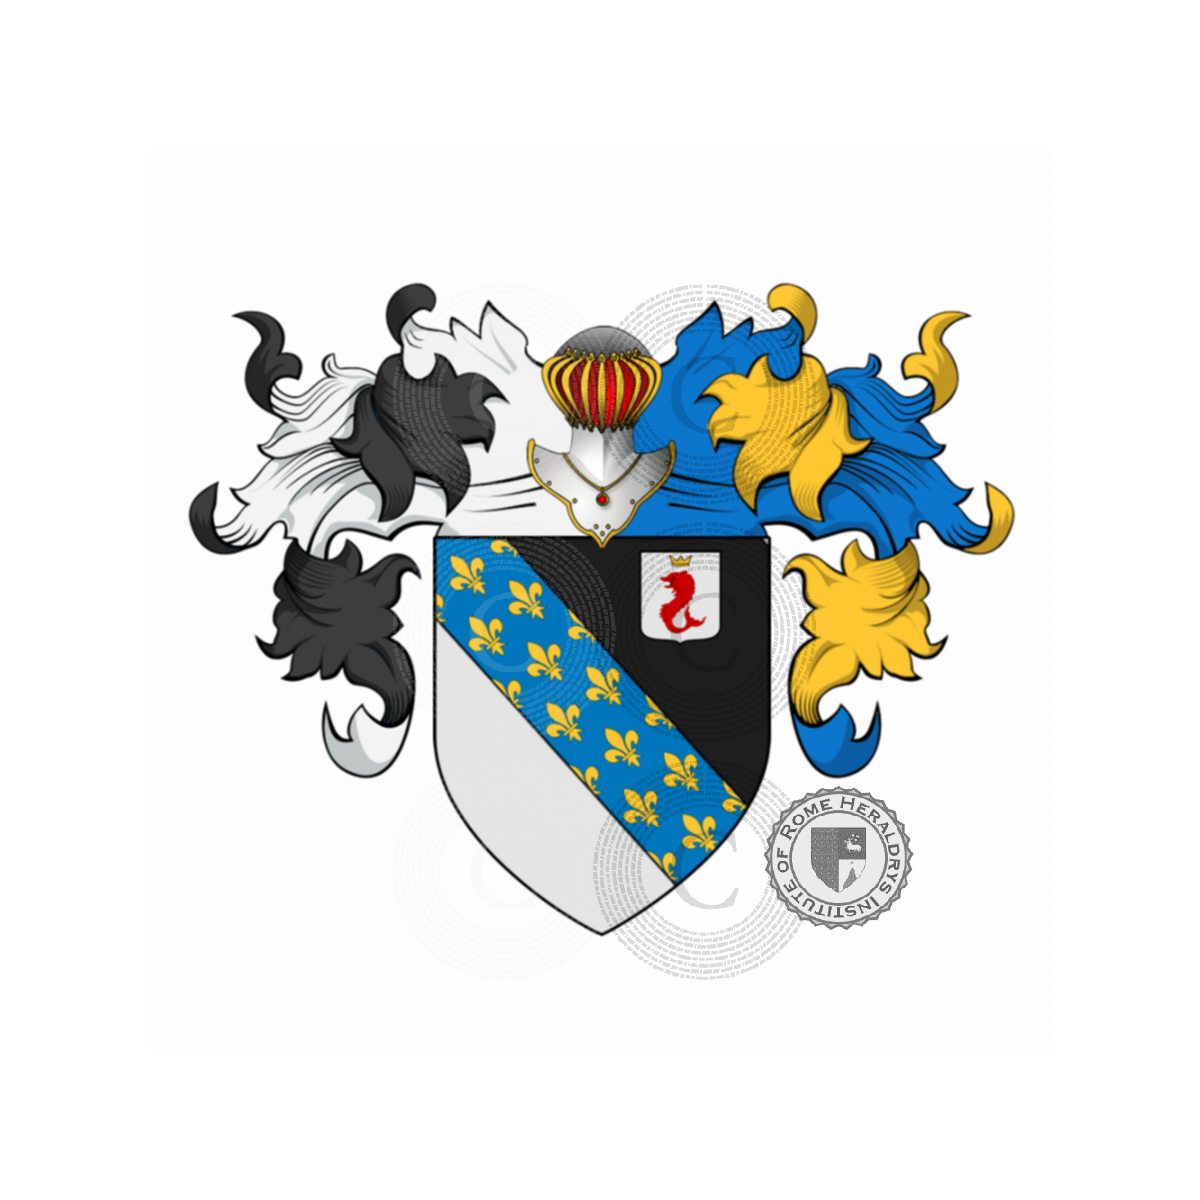 Wappen der FamilieVettori, Rettore,Vettorazzi,Vettore,Vettori del Drago